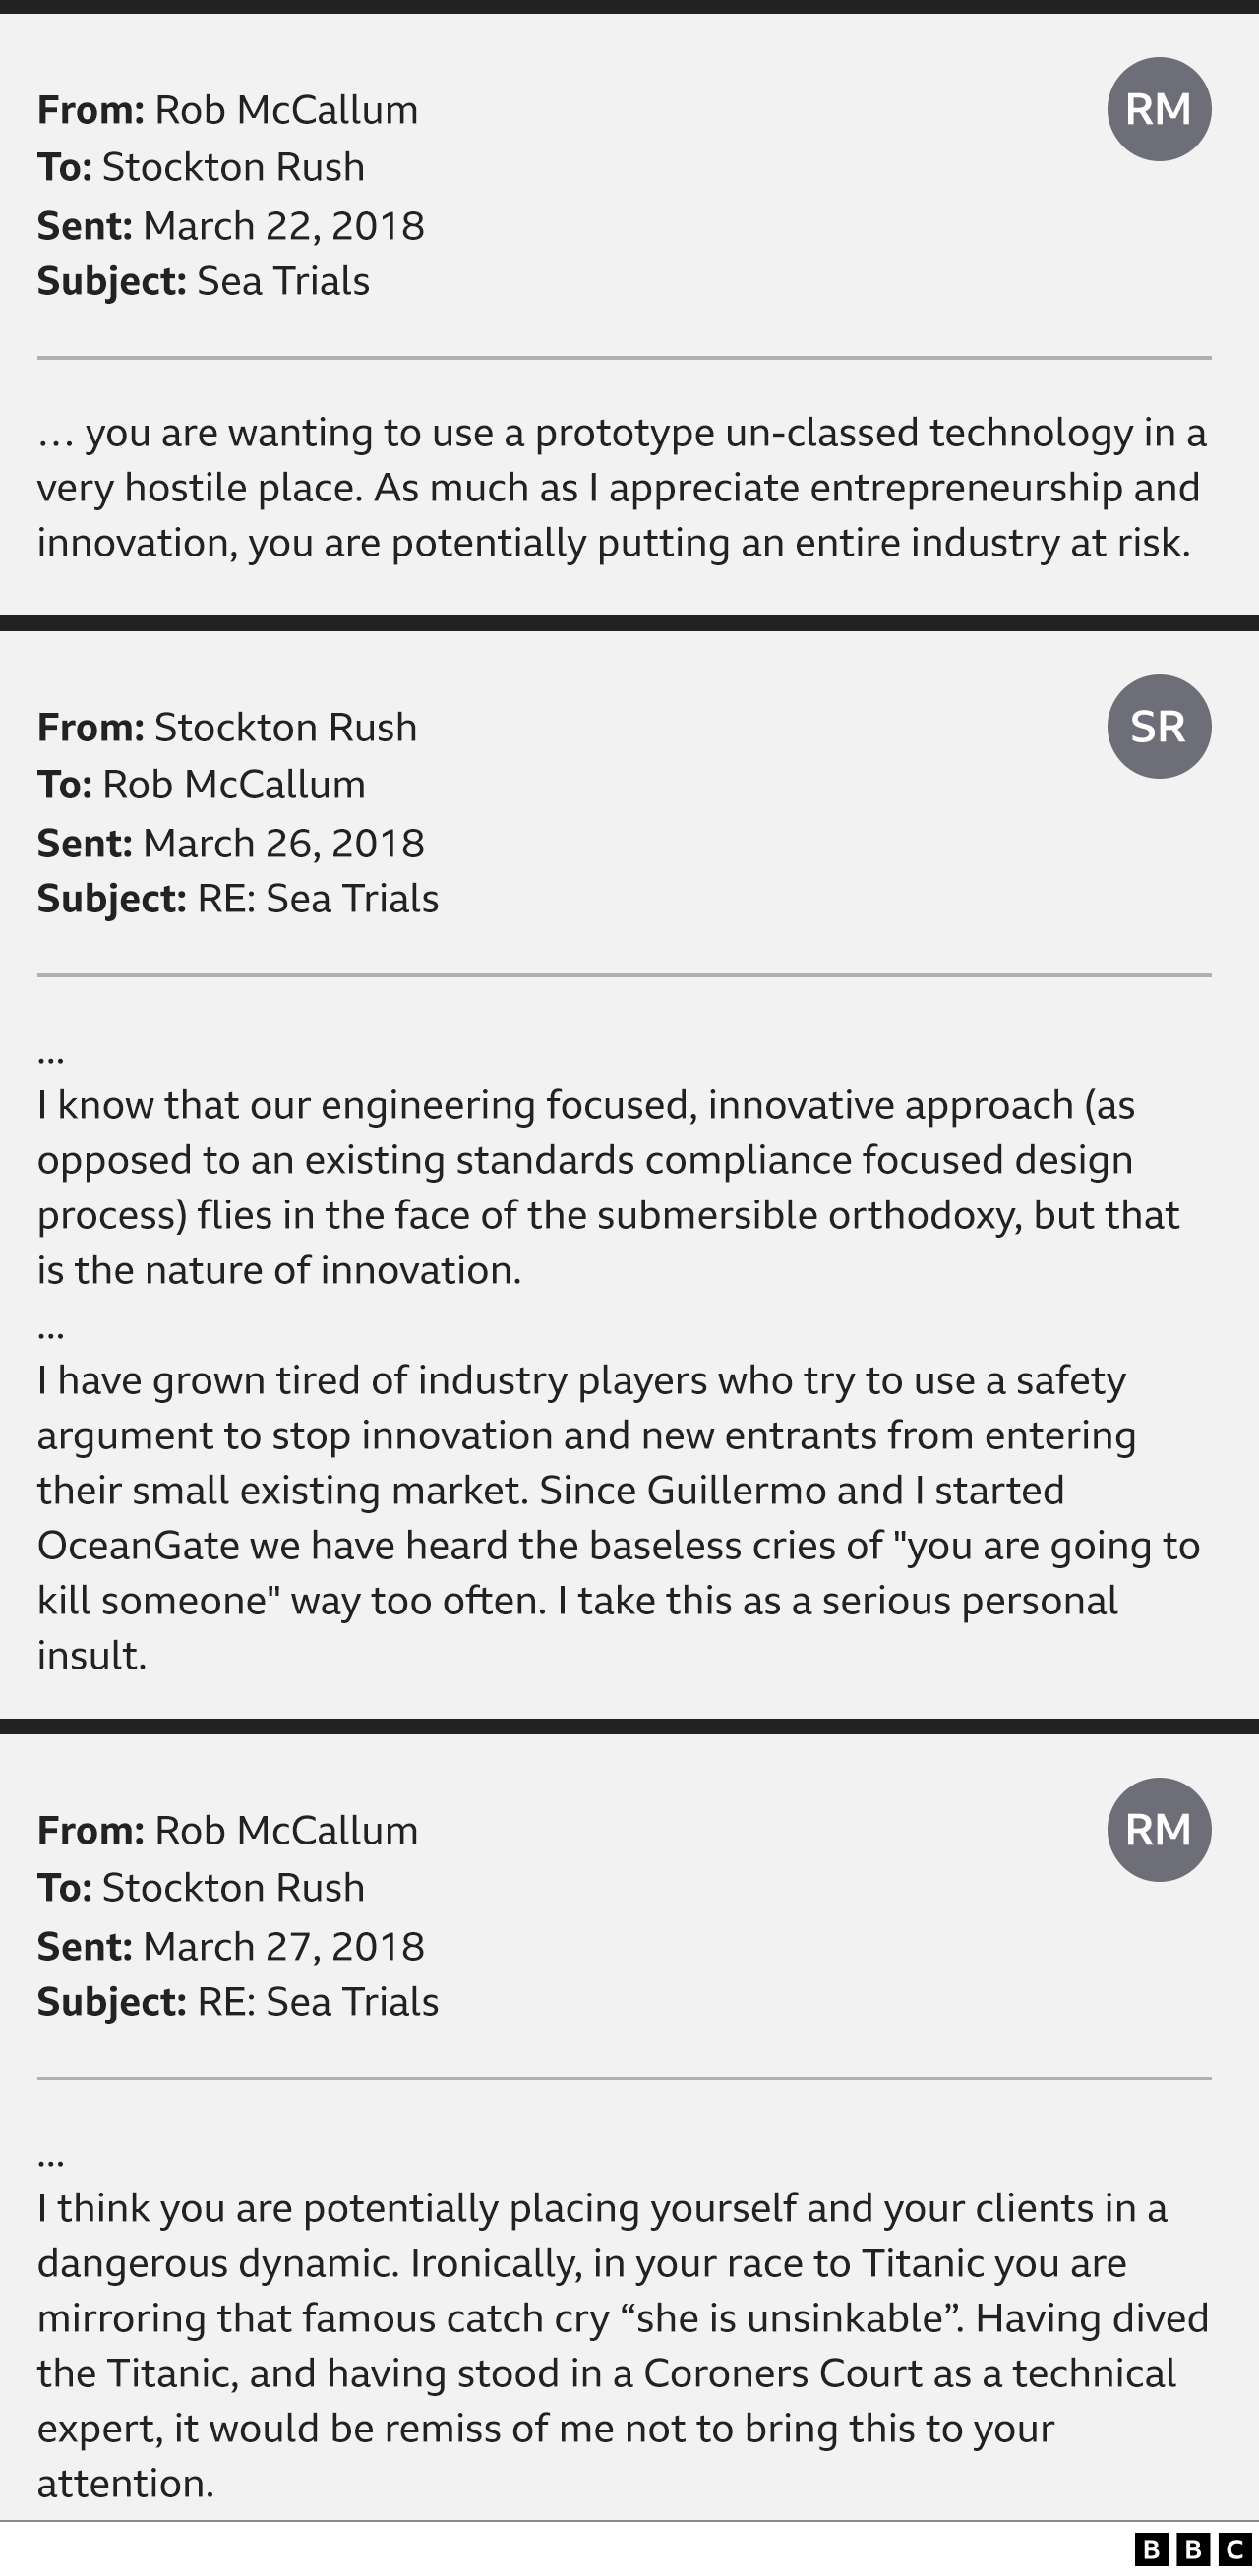 Рисунок, показывающий выдержки из электронных писем между Робом Маккаллумом и Стоктоном Рашем. «Вы хотите использовать прототип неклассифицированной технологии в очень враждебном месте. Как бы я ни ценил предпринимательство и инновации, вы потенциально подвергаете риску всю отрасль». В ответ г-н Раш говорит: «Я знаю, что наш инженерно-ориентированный инновационный подход бросает вызов ортодоксальным взглядам на подводные лодки, но такова природа инноваций». Затем он добавляет: "Я устал от отраслевых игроков, которые пытаются использовать аргументы безопасности, чтобы помешать инновациям и новым участникам выйти на их небольшой существующий рынок. С тех пор, как Гильермо и я основали OceanGate, мы слышали беспочвенные крики: "Вы собираетесь слишком часто убивать кого-то. Я воспринимаю это как серьезное личное оскорбление». В ответе г-на МакКаллума говорится: "Я думаю, что вы потенциально ставите себя и своих клиентов в опасную динамику. По иронии судьбы, в вашей гонке на "Титаник" вы повторяете знаменитый клич "она непотопляема"